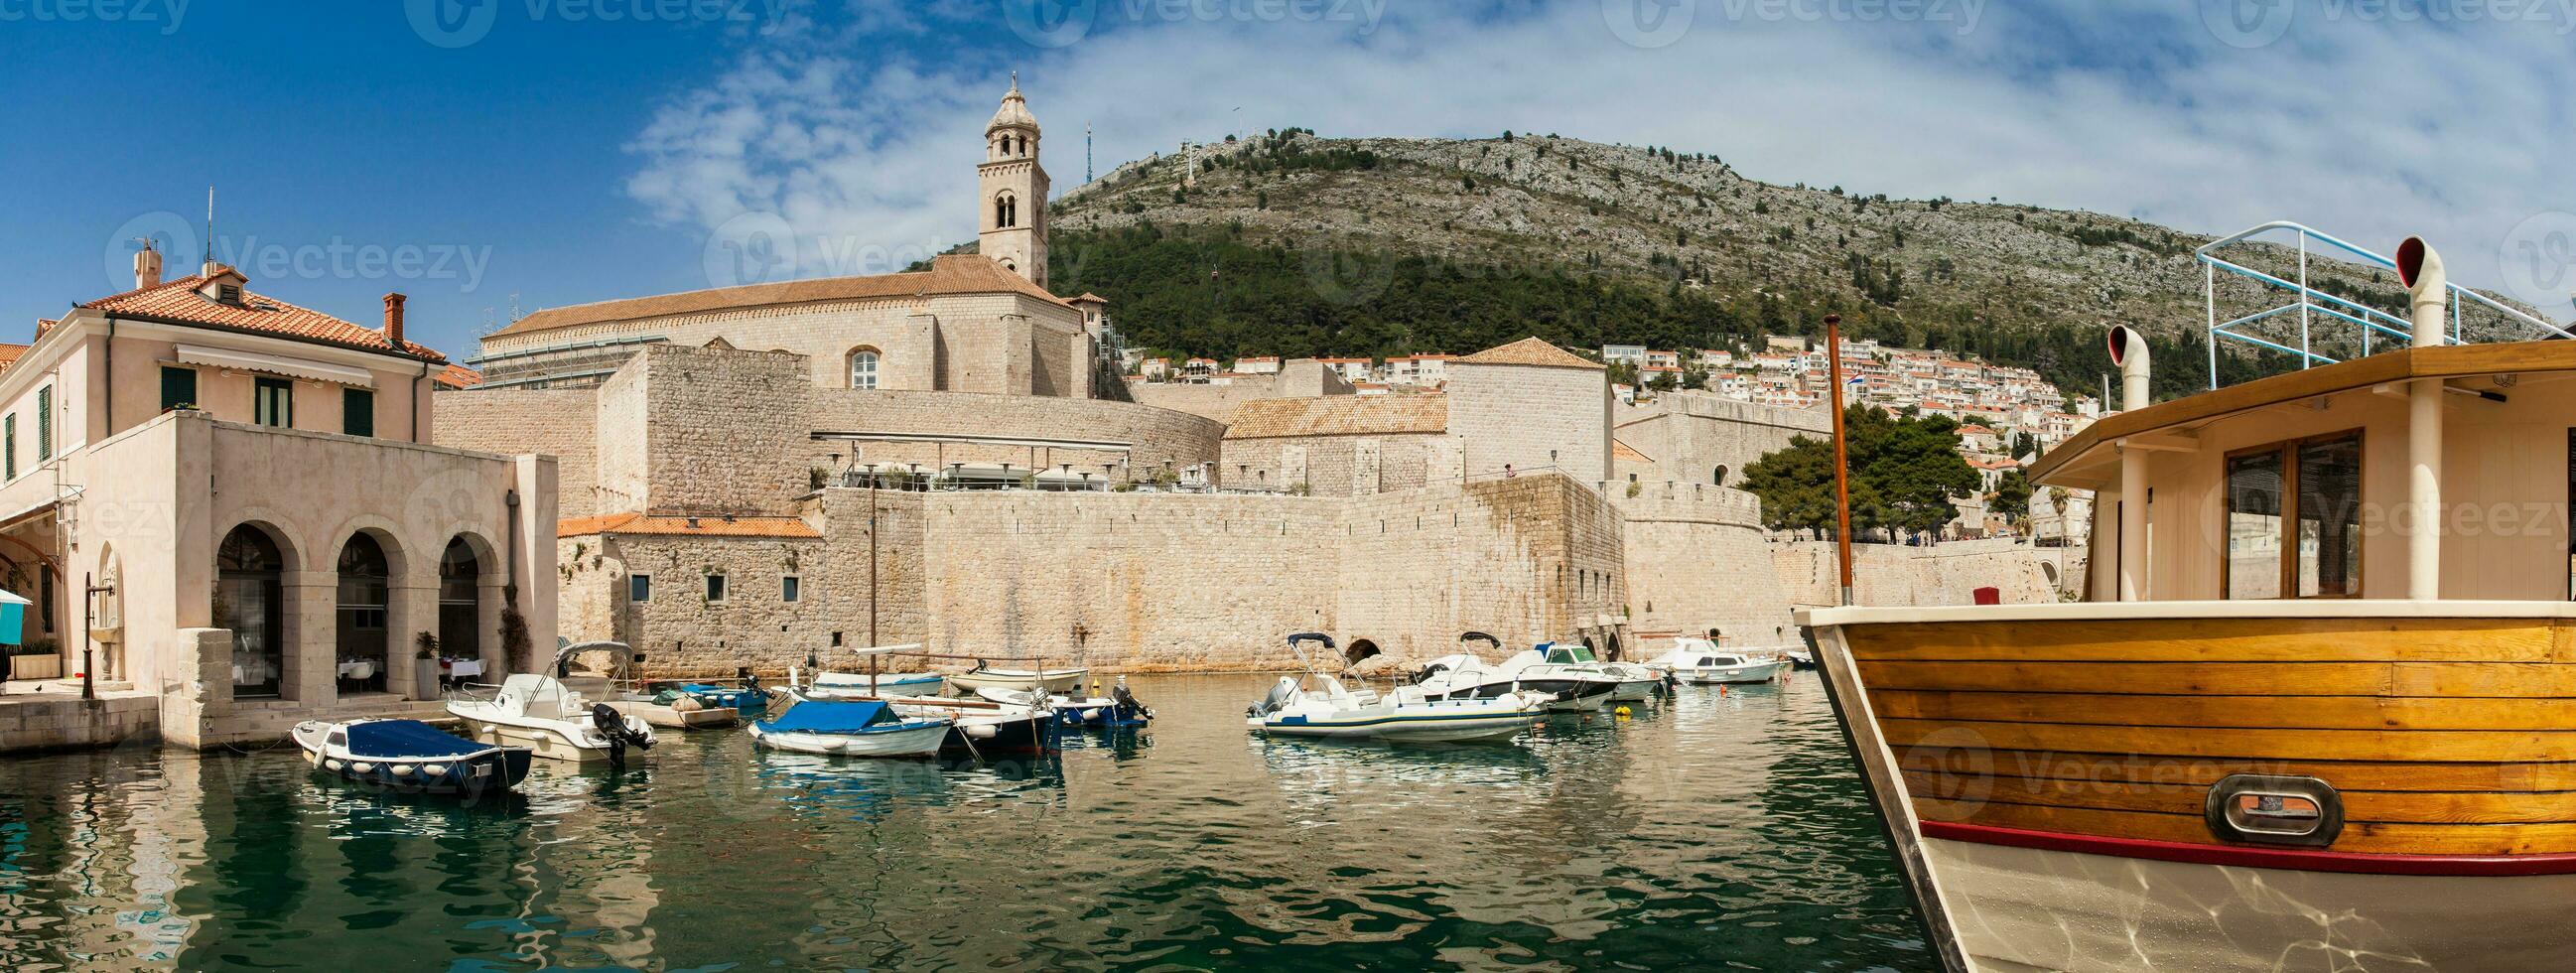 Dubrovnik Stadt alt Hafen Befestigungen und montieren srd foto